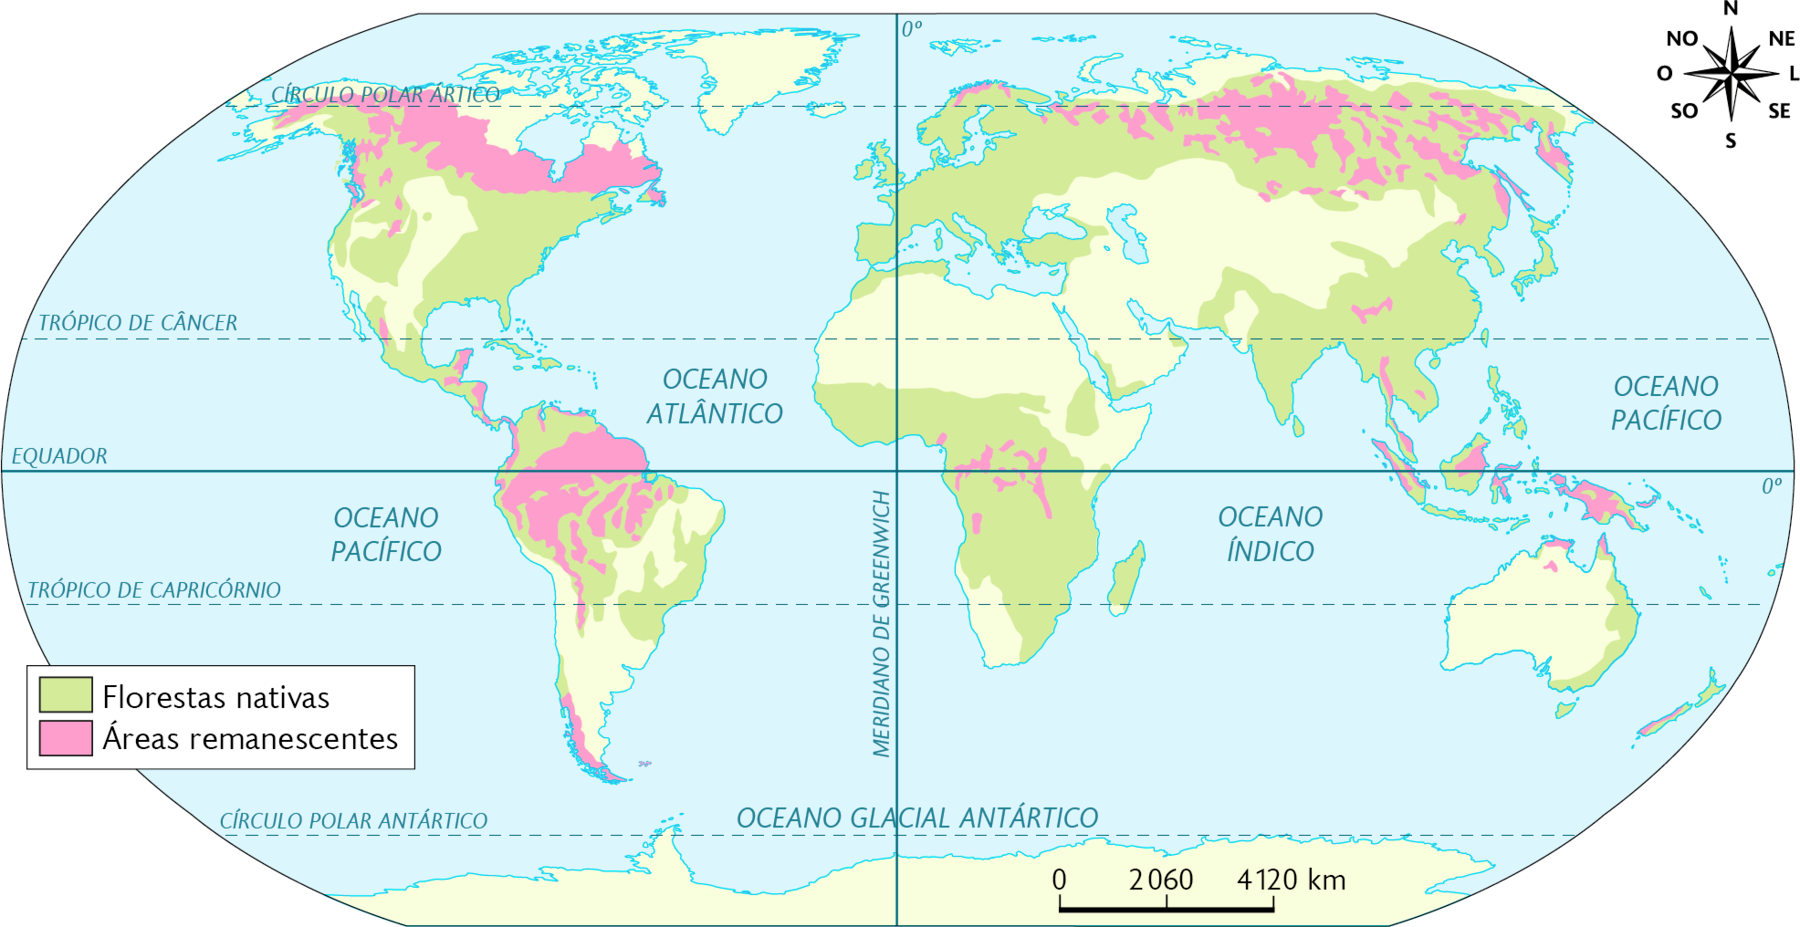 Mapa-múndi. Distribuição original e atual das florestas nativas no mundo (2019). 
Distribuição original de florestas nativas: costa leste e oeste da América do Norte; norte e centro da América Central; norte, centro e costa leste da América do Sul; toda a Europa, norte e sudeste da Ásia e região costeira de suas ilhas, e leste da Austrália; Centro-sul da África. 
Áreas remanescentes de florestas nativas: norte da América do Norte; áreas dispersas na América Central, norte da América do Sul; pequenas áreas no centro da África, norte e pequenas áreas no sudeste da Ásia e áreas dispersas em suas ilhas. No canto superior direito, rosa dos ventos e na parte inferior, a escala: 2060 quilômetros por centímetro.